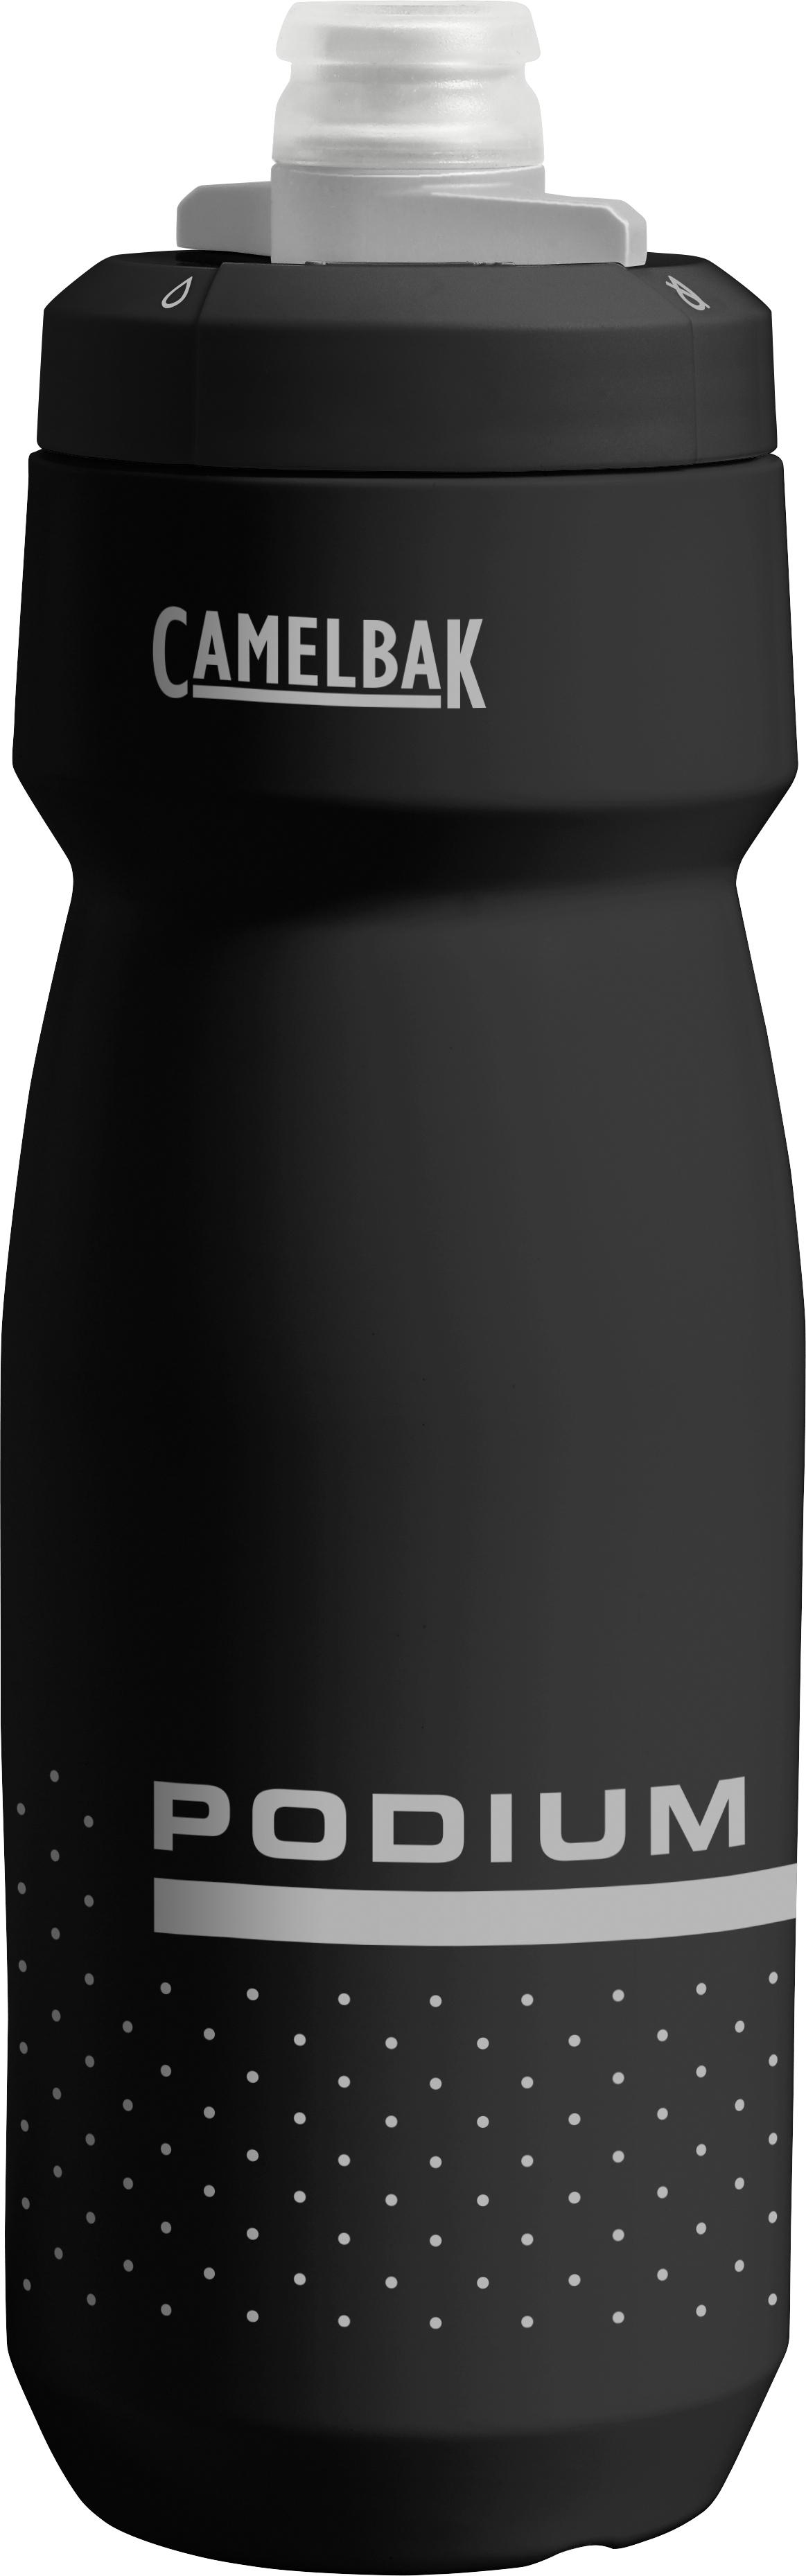 Camelbak Podium Water Bottle, Black, 710Ml